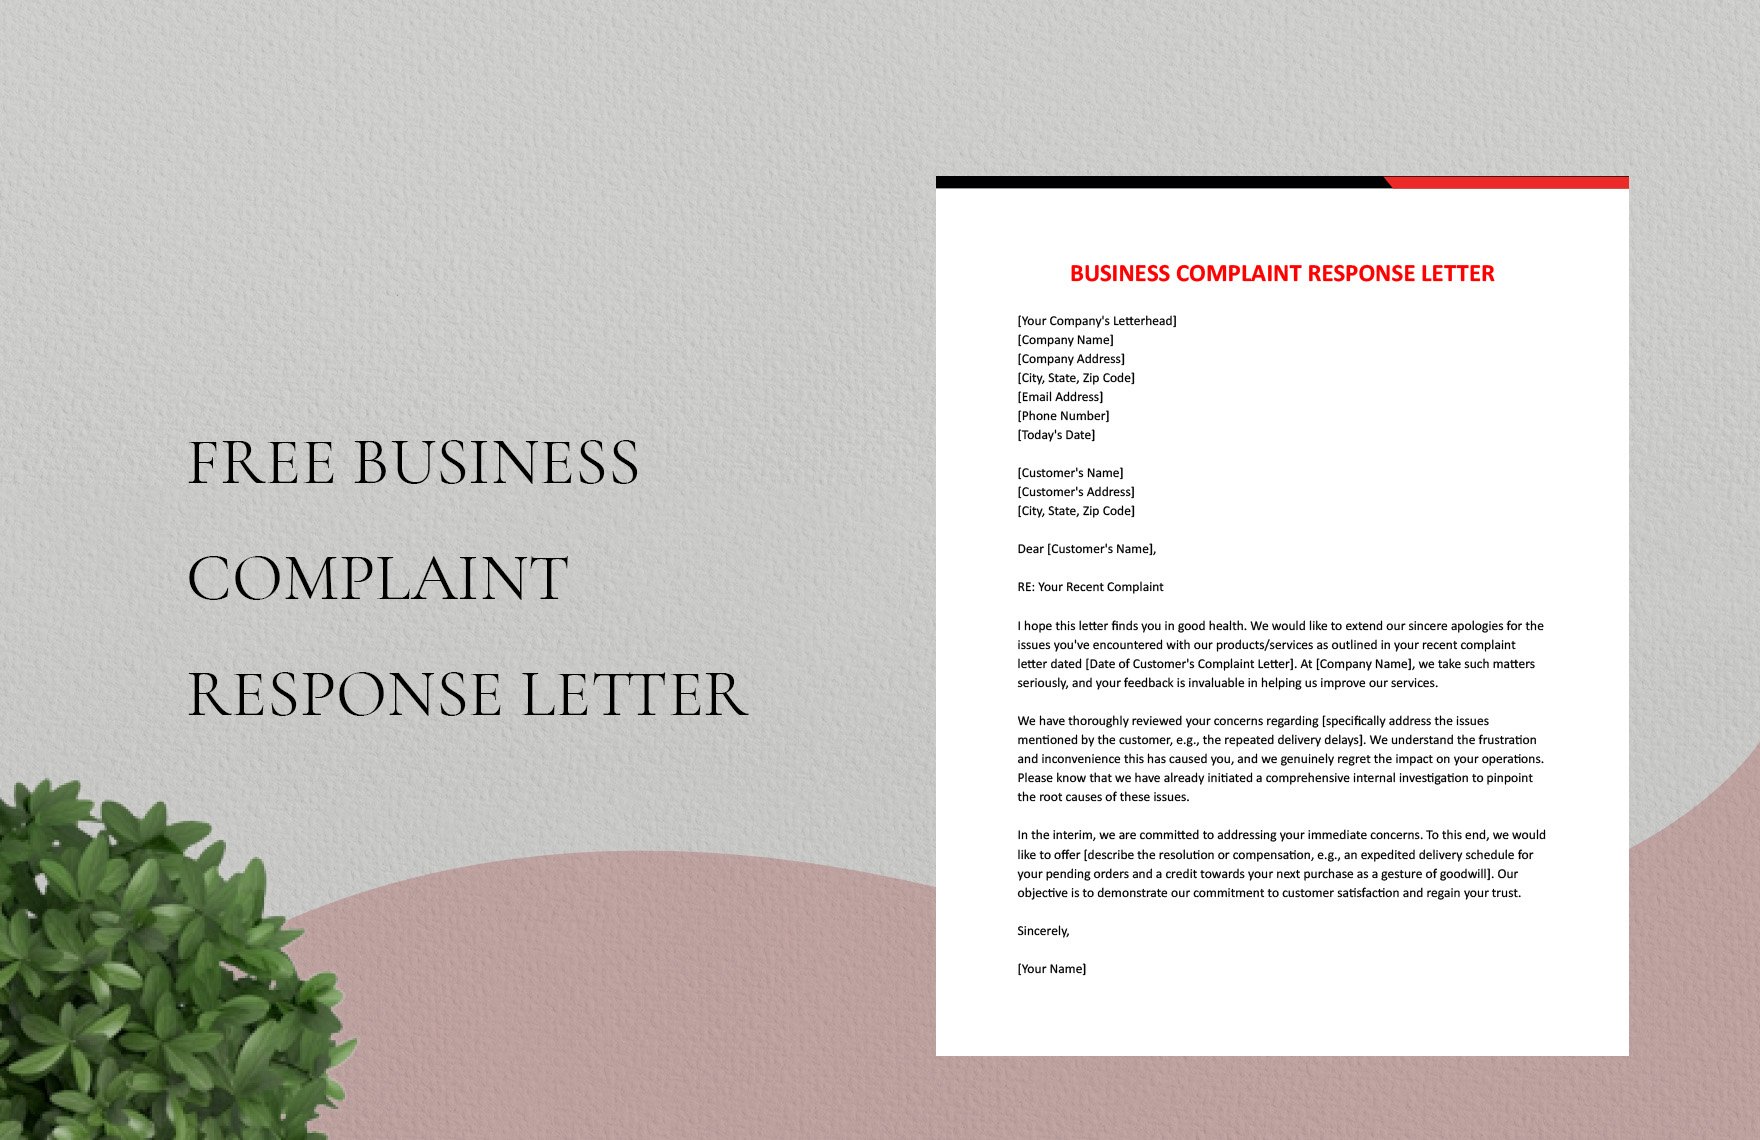 Business Complaint Response Letter